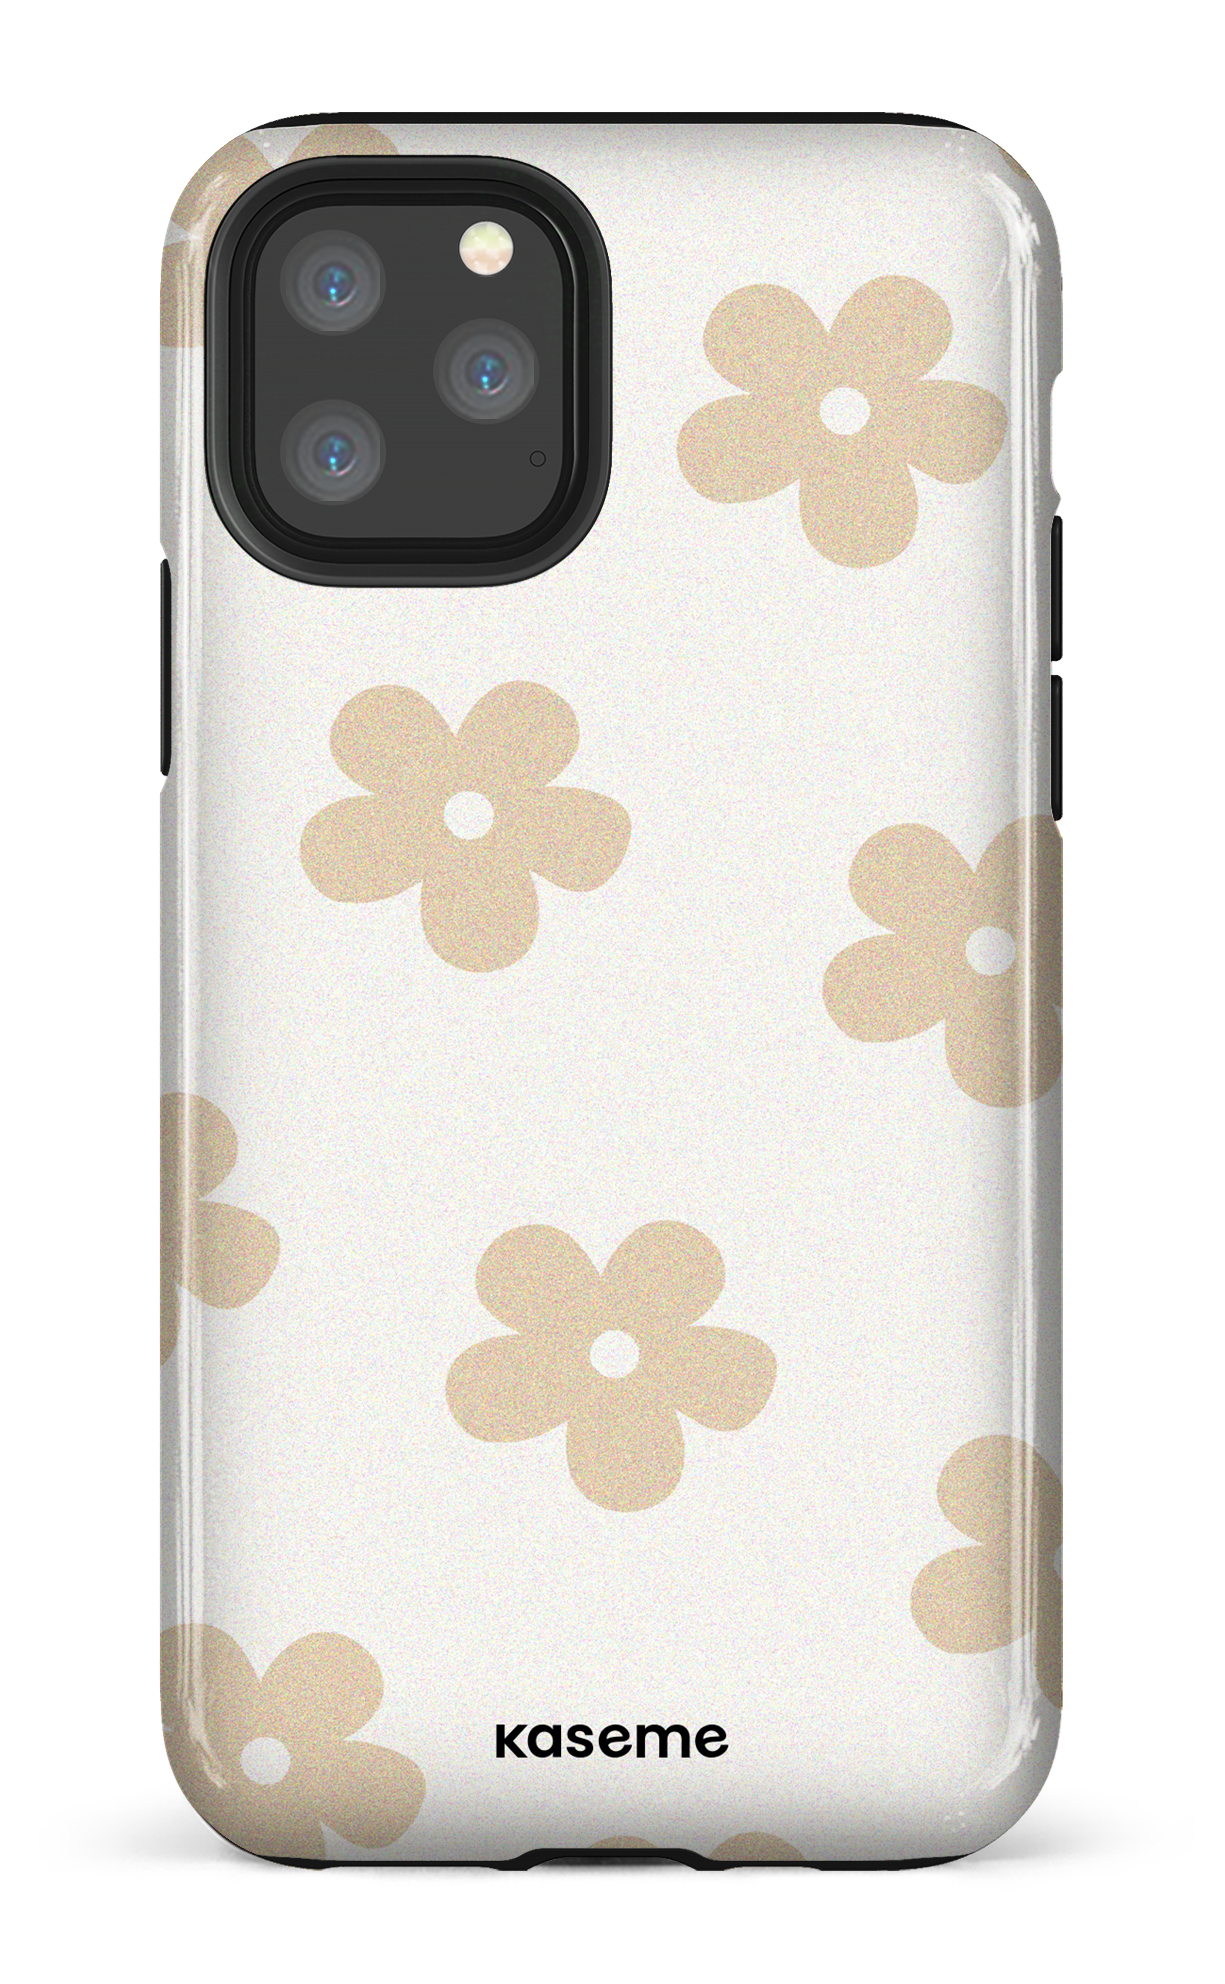 Woodstock beige - iPhone 11 Pro